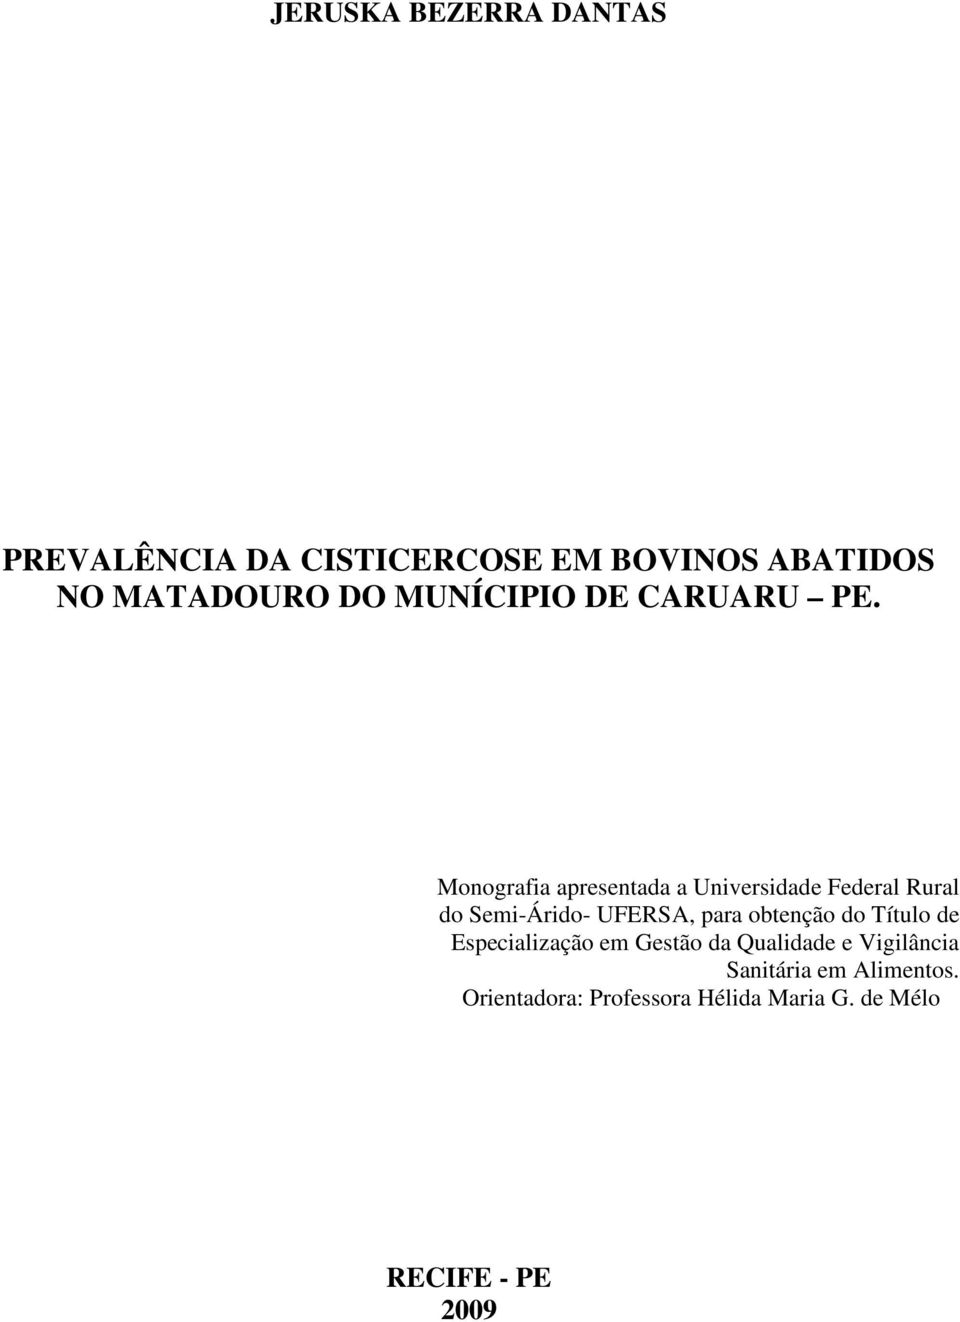 Monografia apresentada a Universidade Federal Rural do Semi-Árido- UFERSA, para obtenção